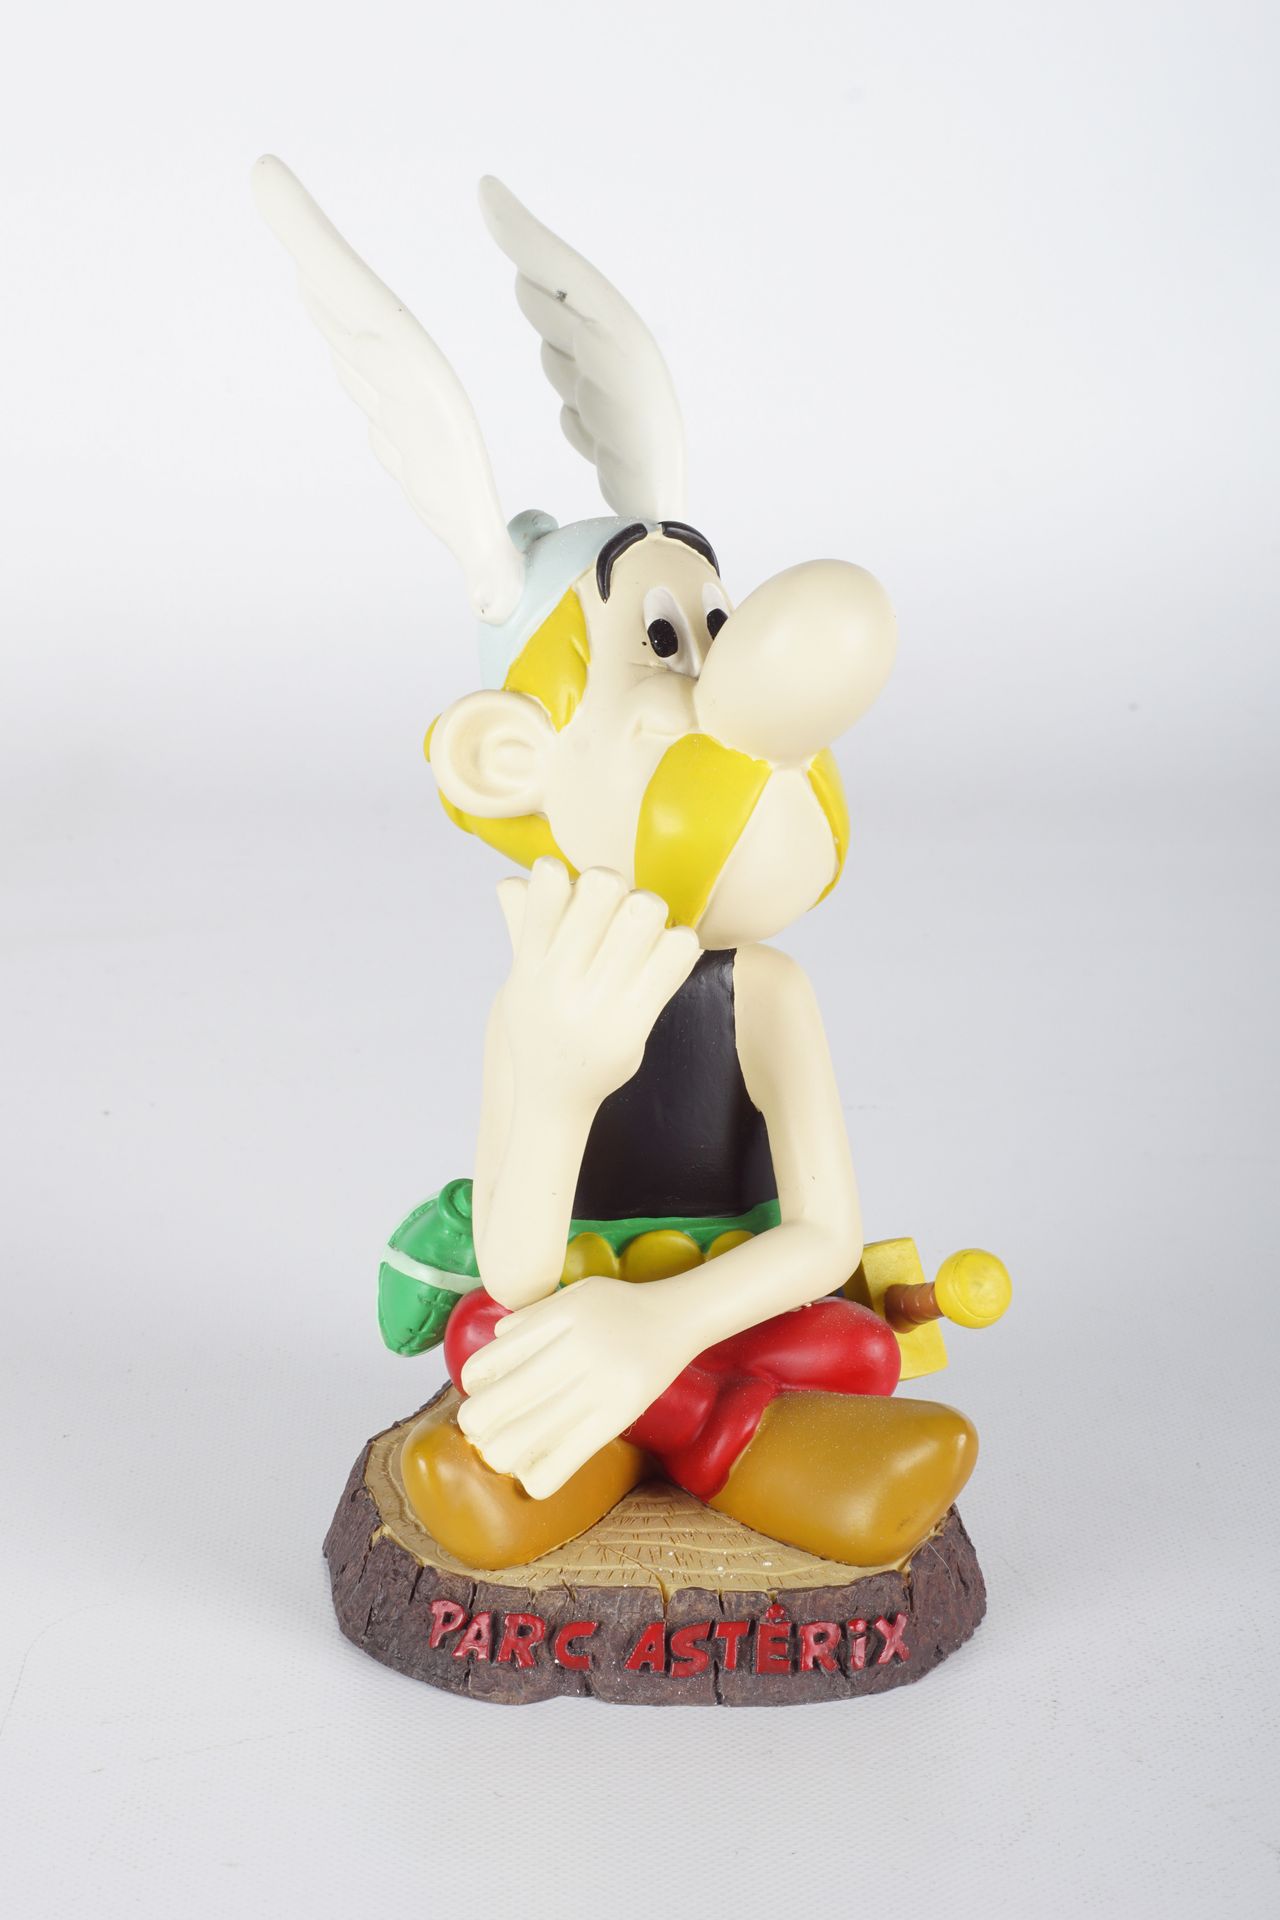 UDERZO, Albert (1927-2020) Asterix, Parc Asterix edizione limitata, 2004, B